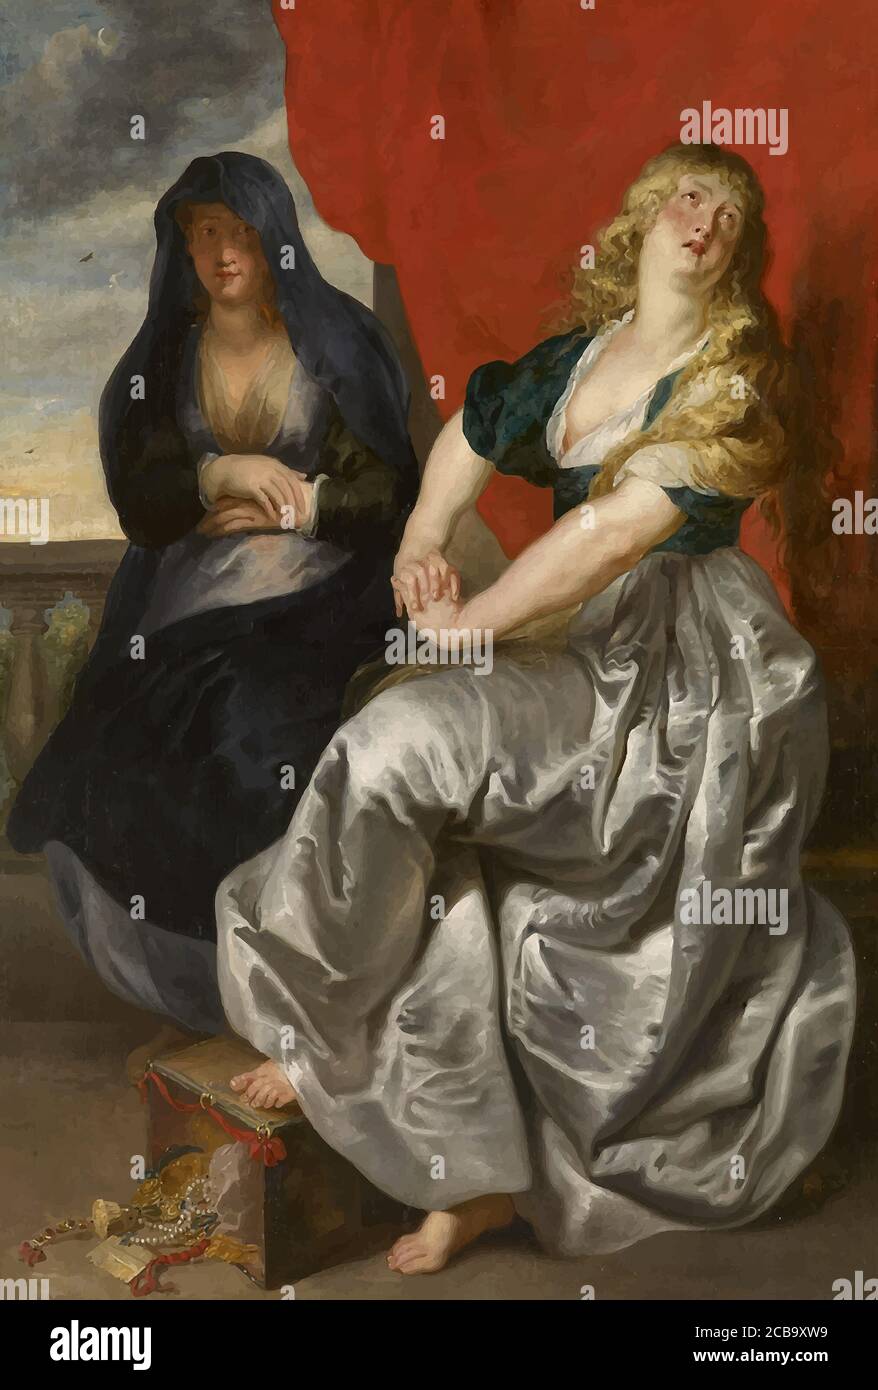 Mon numérique a modifié le Repentant Magdalene et sa sœur Martha par Peter Paul Rubens 1620. Musée d'histoire de l'art à Vienne, Autriche Banque D'Images